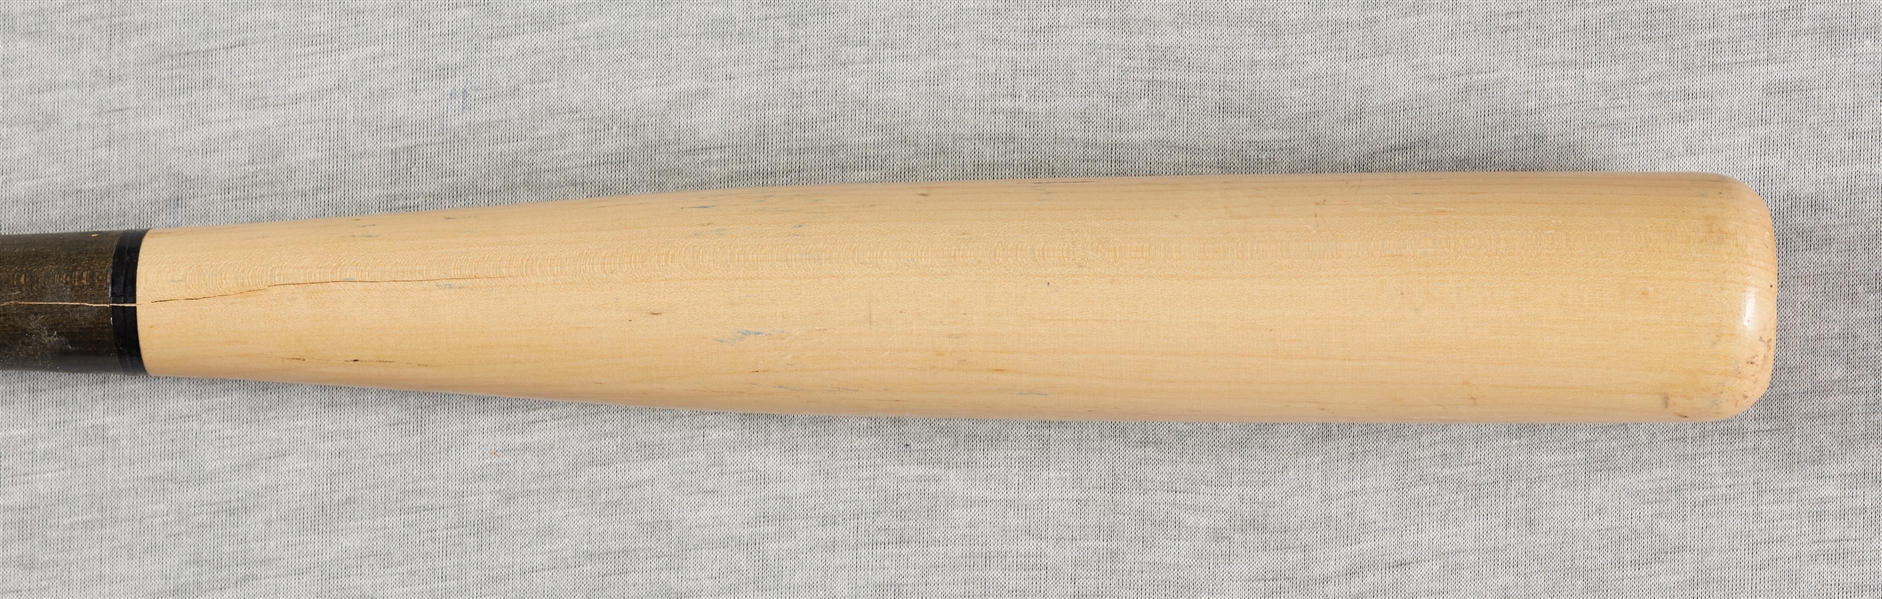 Kyle Schwarber 2015 Game-Used Dinger Bat (MLB) (Fanatics)